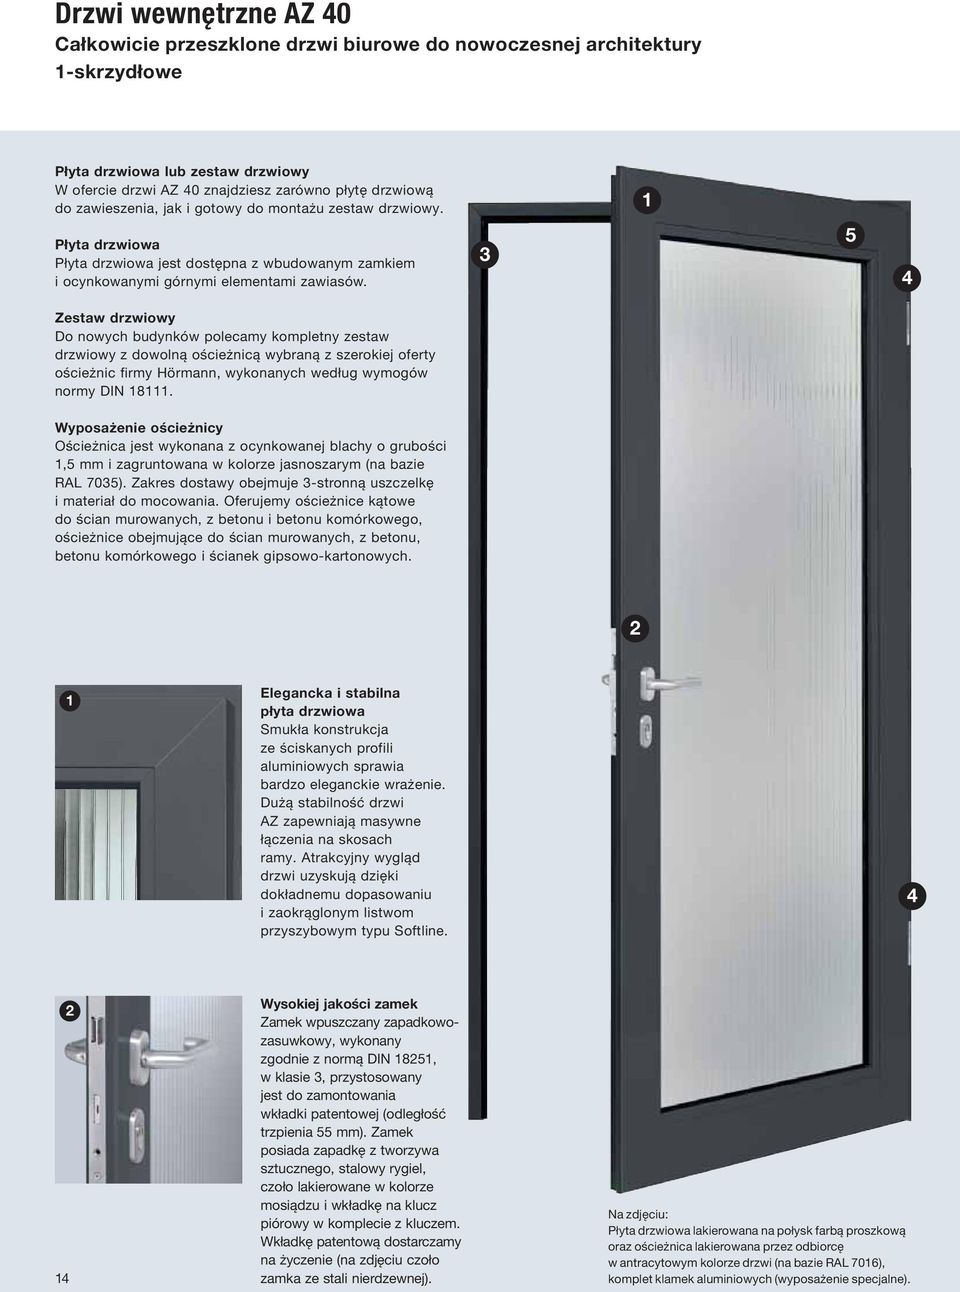 3 5 Zestaw drzwiowy Do nowych budynków polecamy kompletny zestaw drzwiowy z dowolną ościeżnicą wybraną z szerokiej oferty ościeżnic firmy Hörmann, wykonanych według wymogów normy DIN 18111.